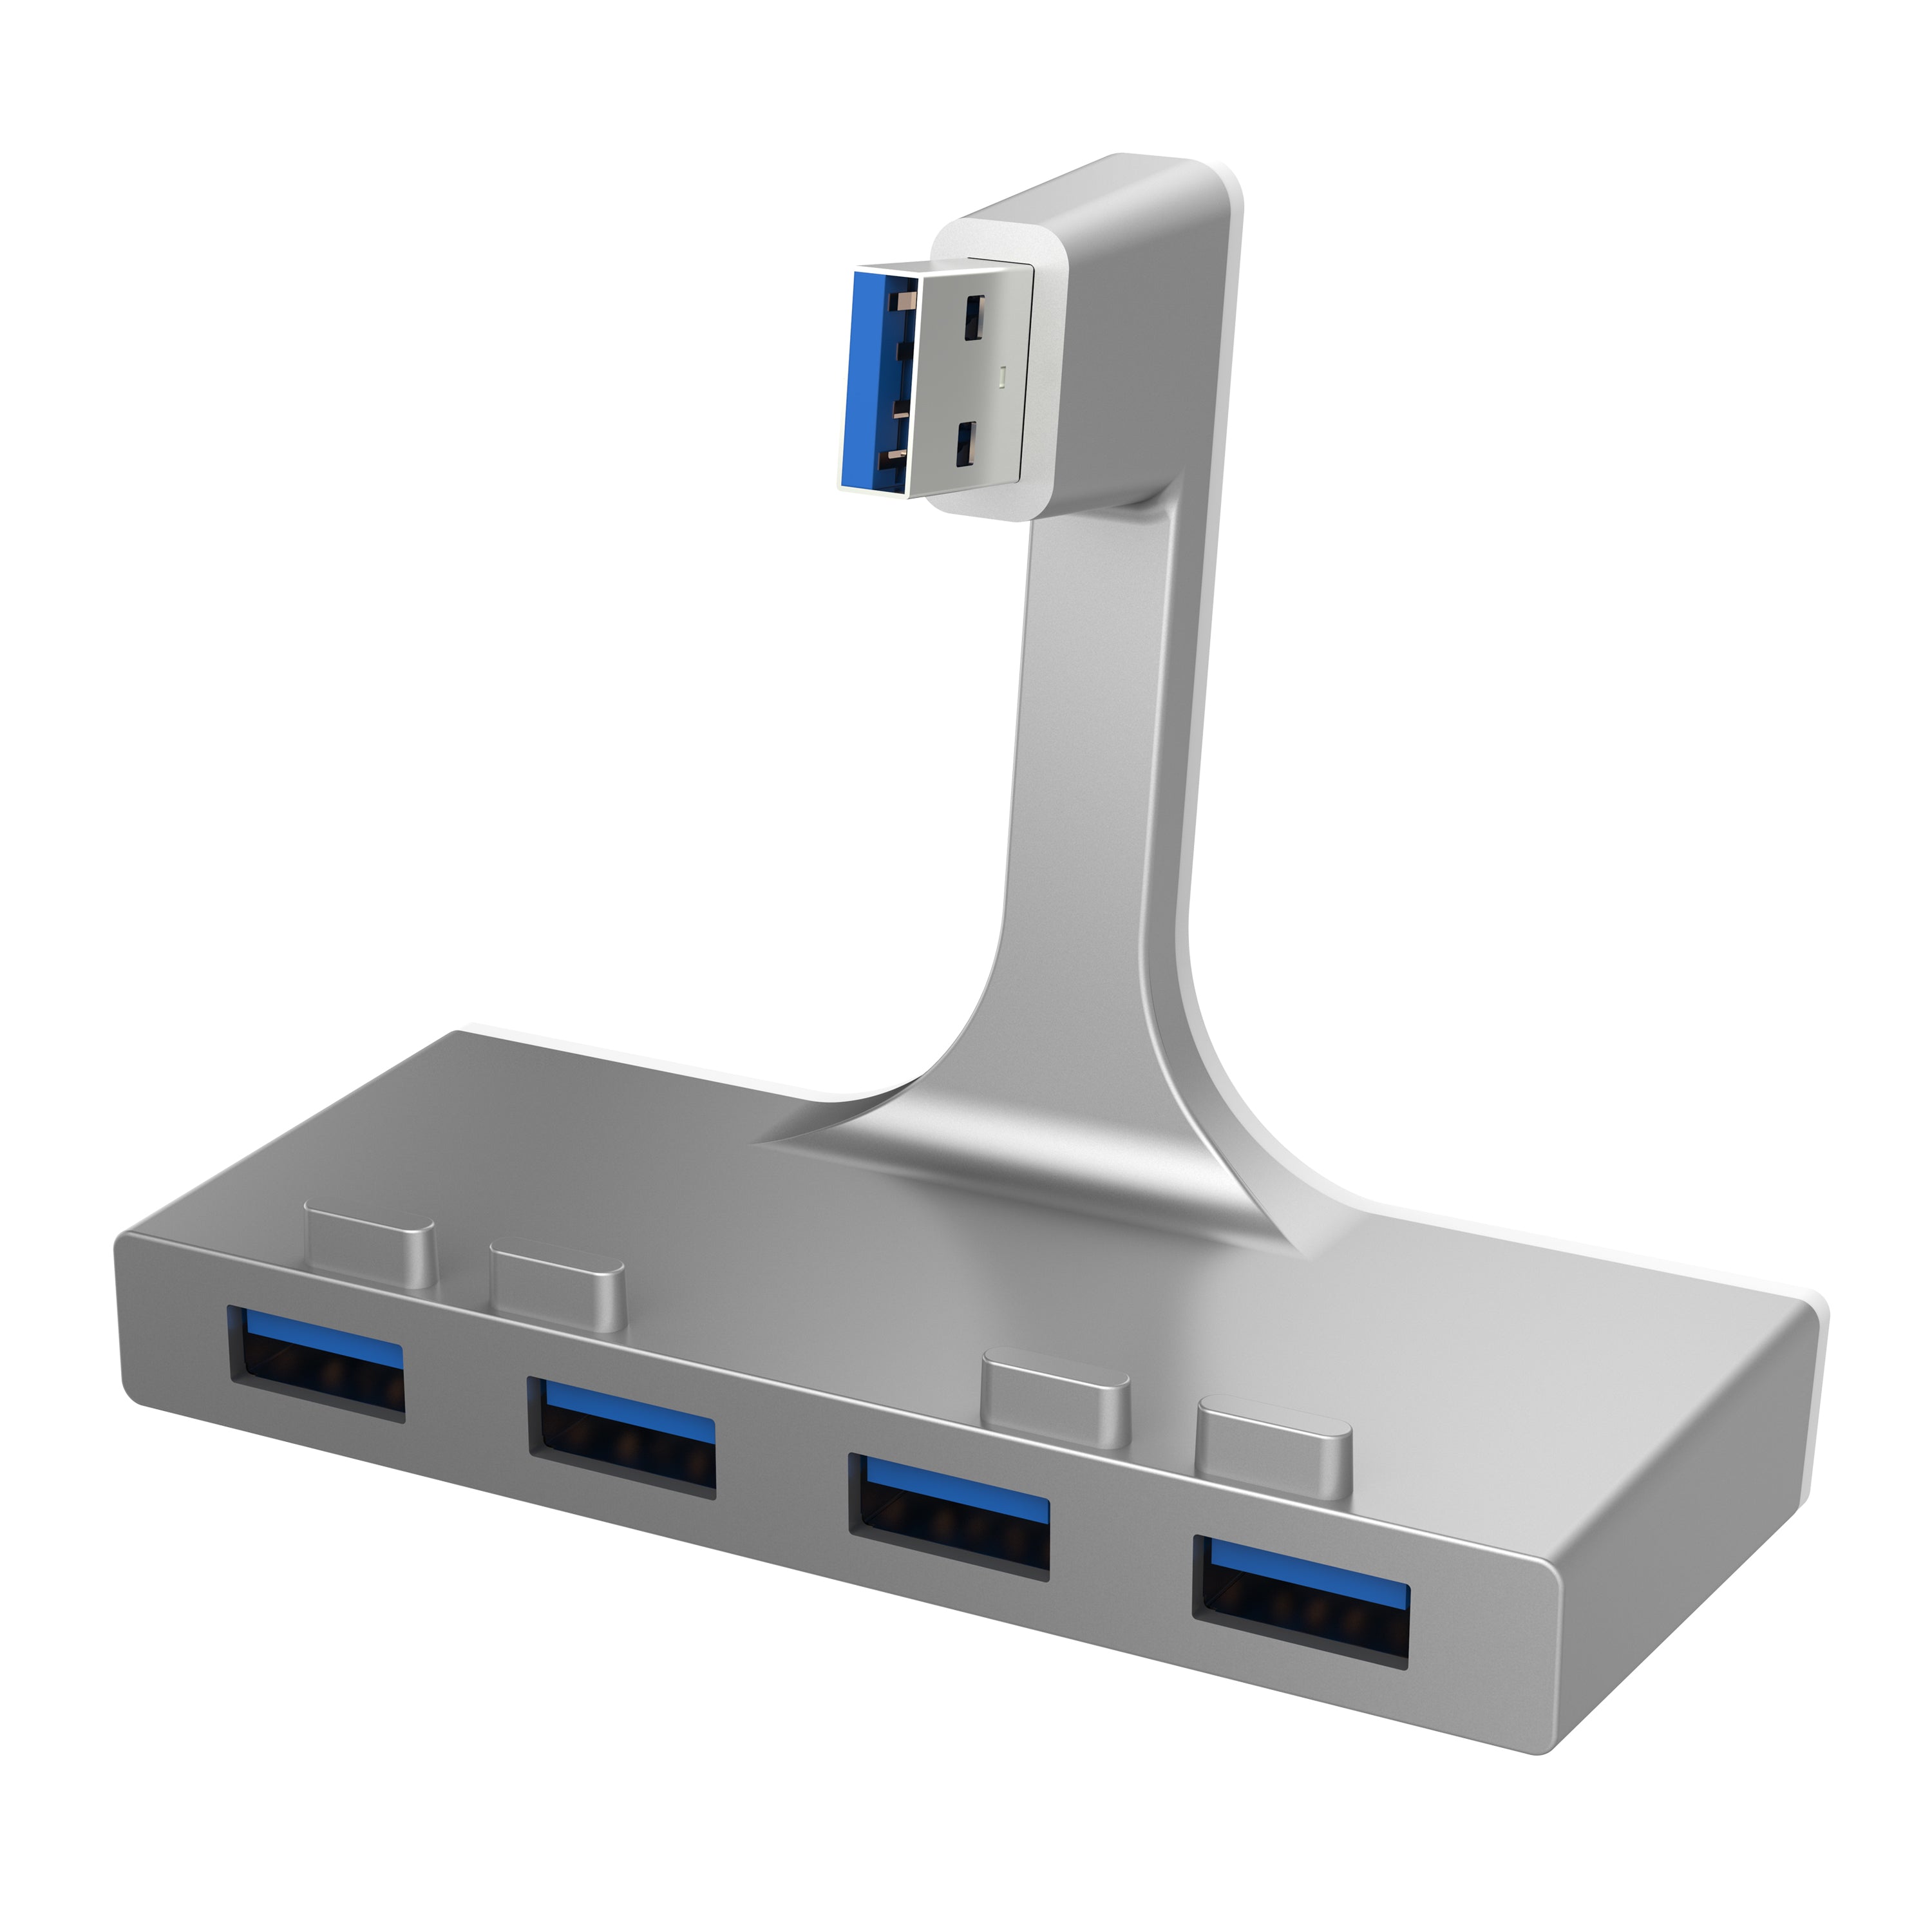 Footpad Beskrivende boykot 4-Port USB 3.0 Hub For iMac - Sabrent